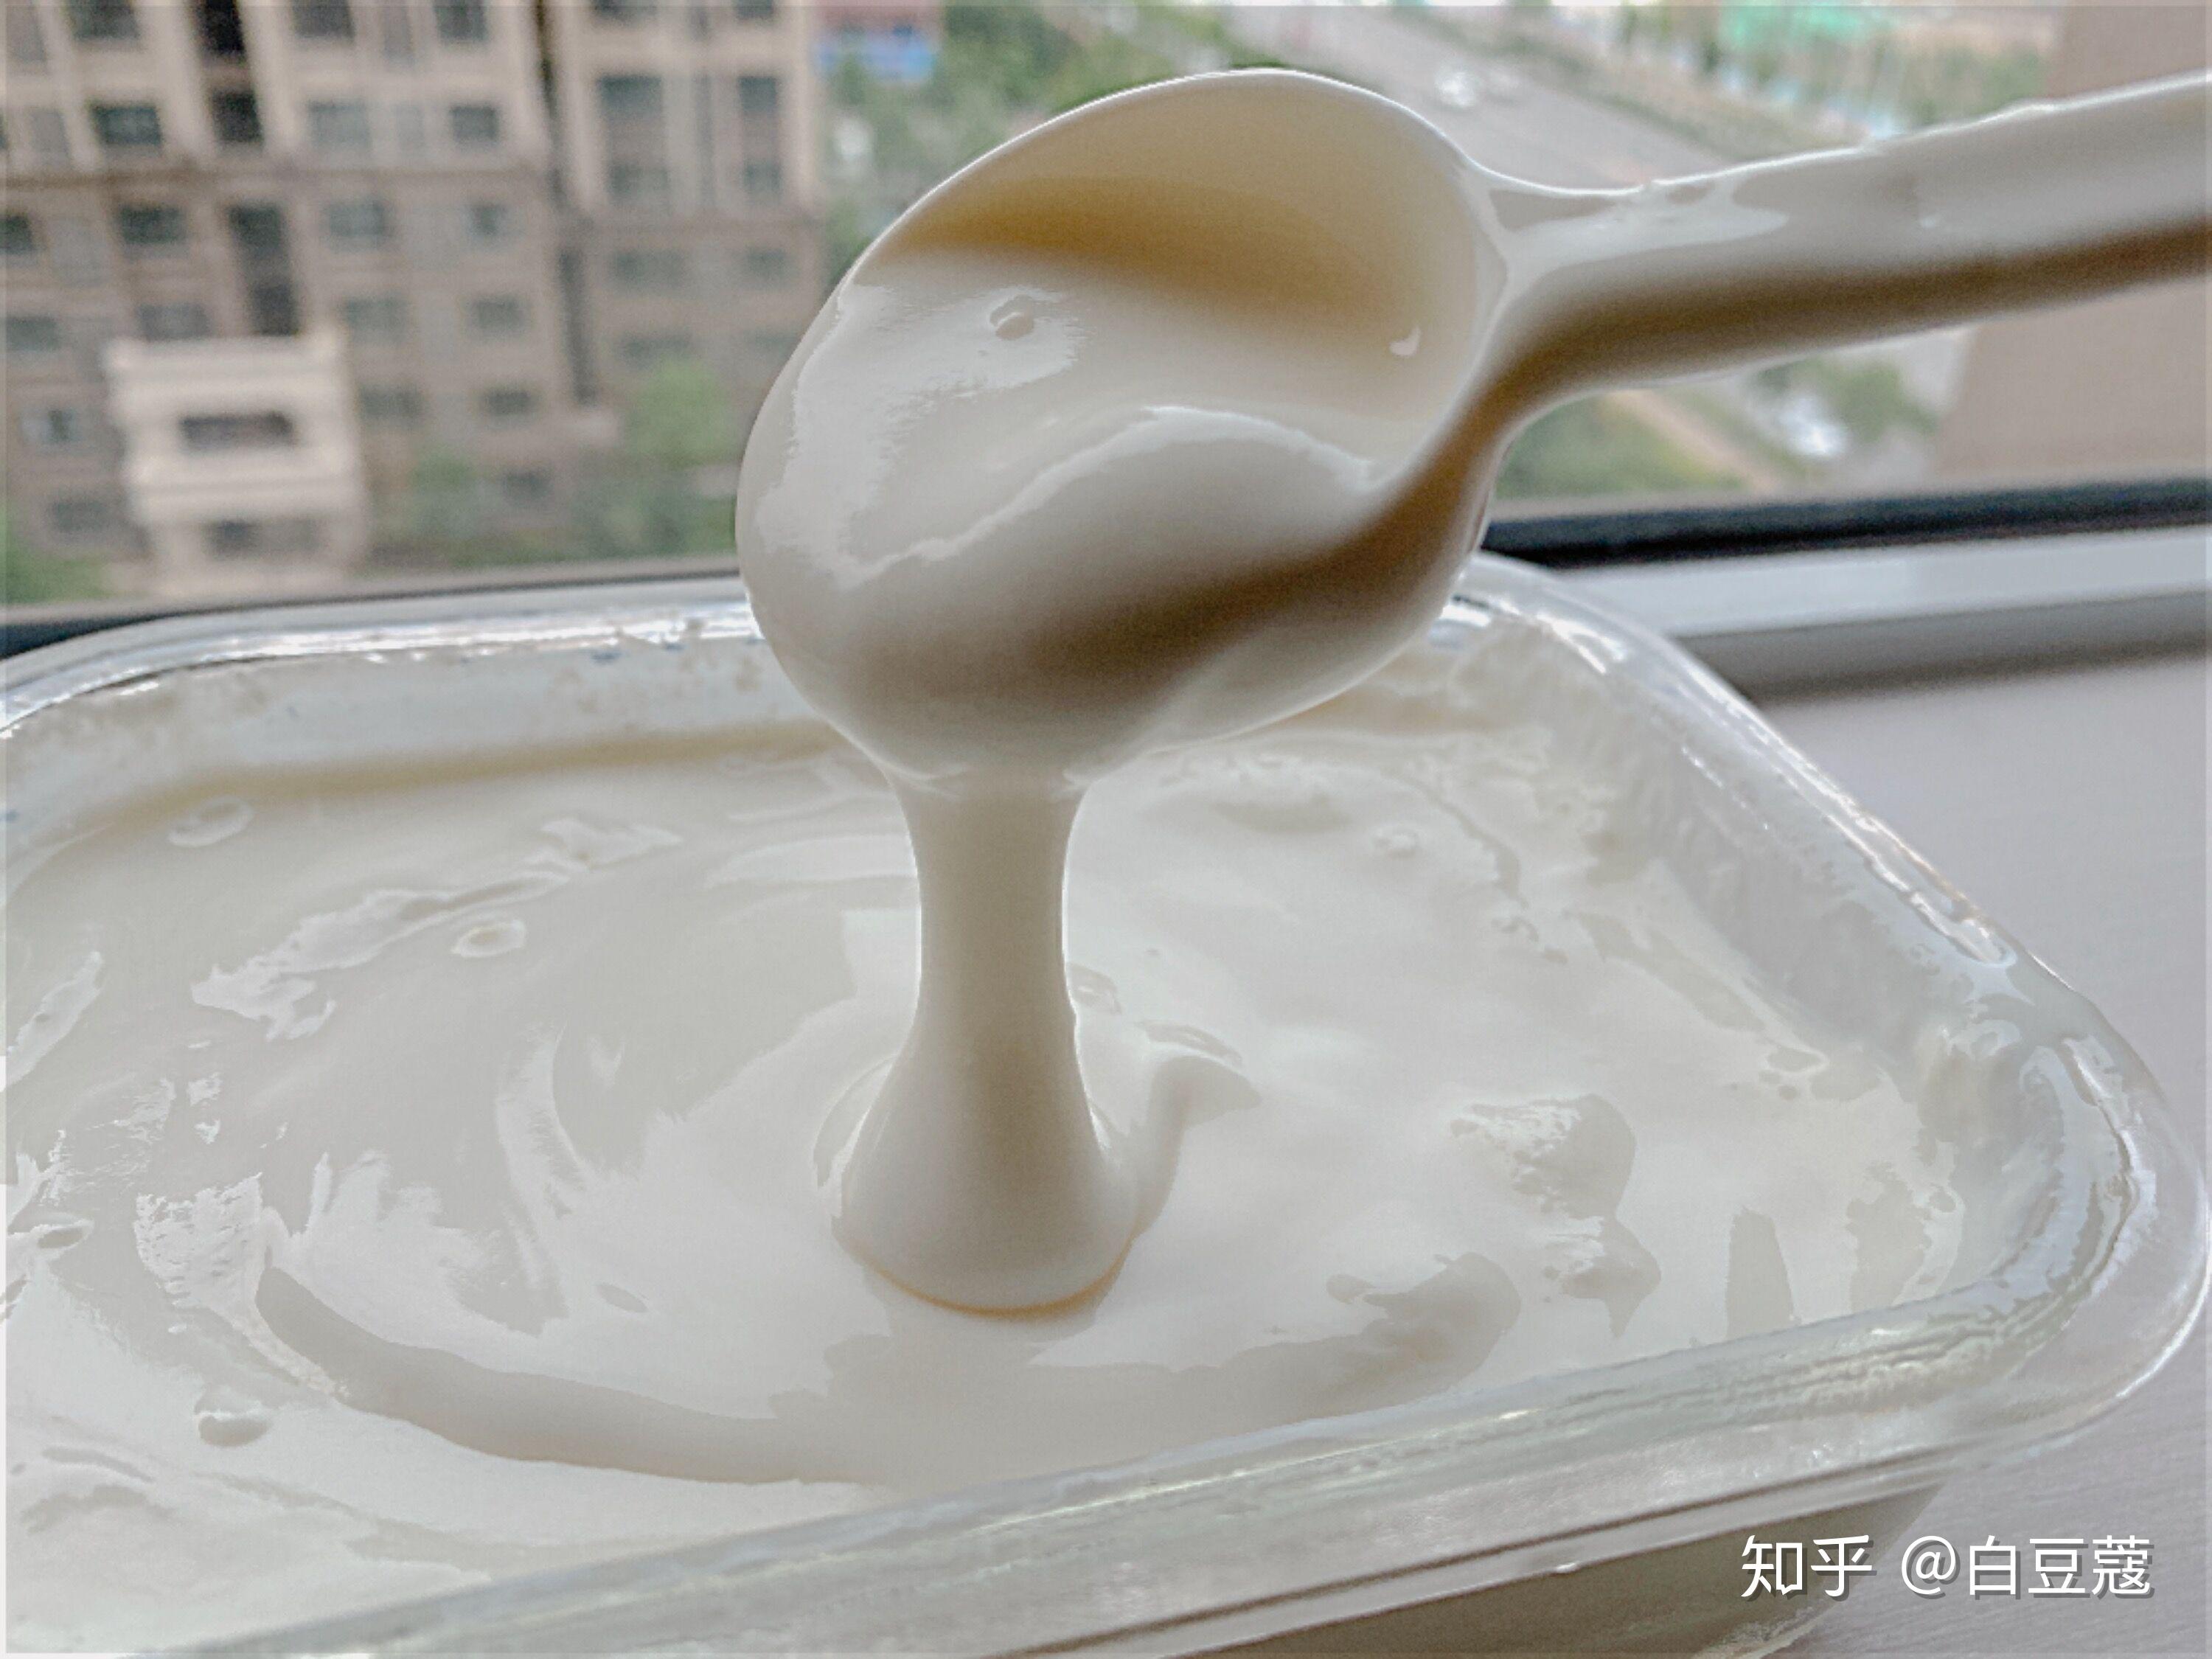 【Jelly】用闽南语手把手教你做酸奶|不用酸奶机做酸奶_哔哩哔哩_bilibili